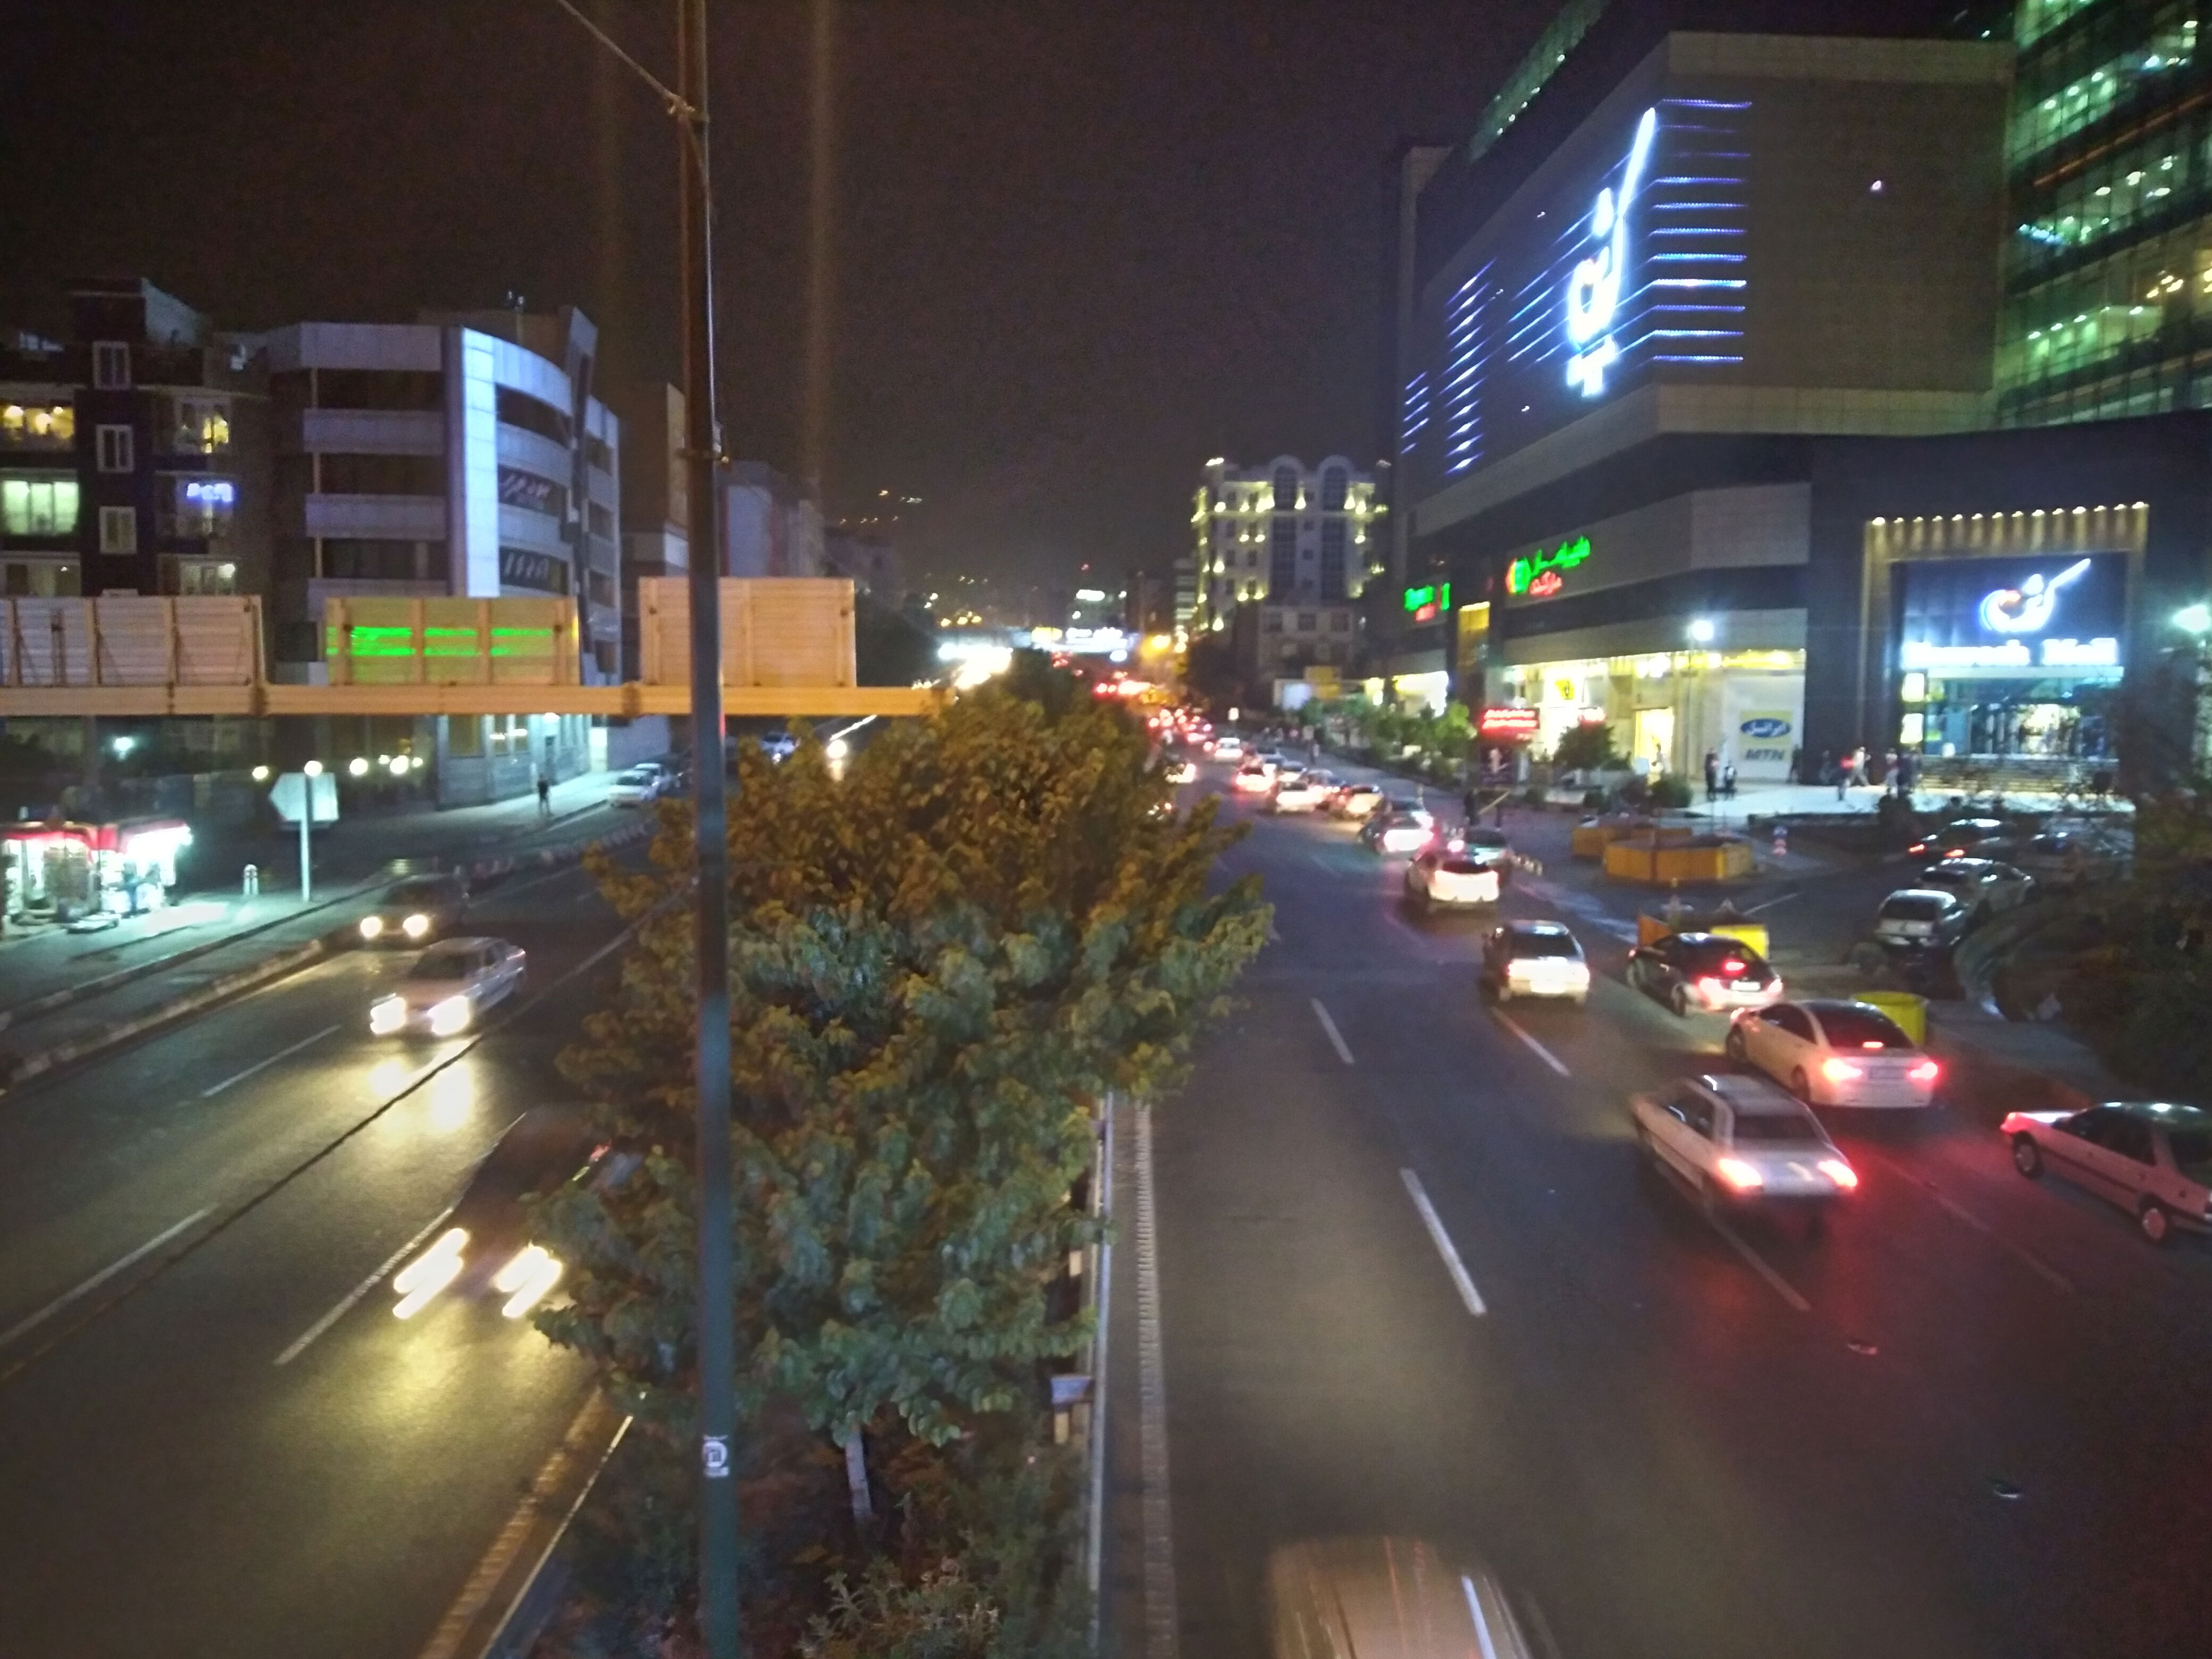 نمونه تصویر دوربین اصلی گلکسی A11 - نمای بلوار در شب